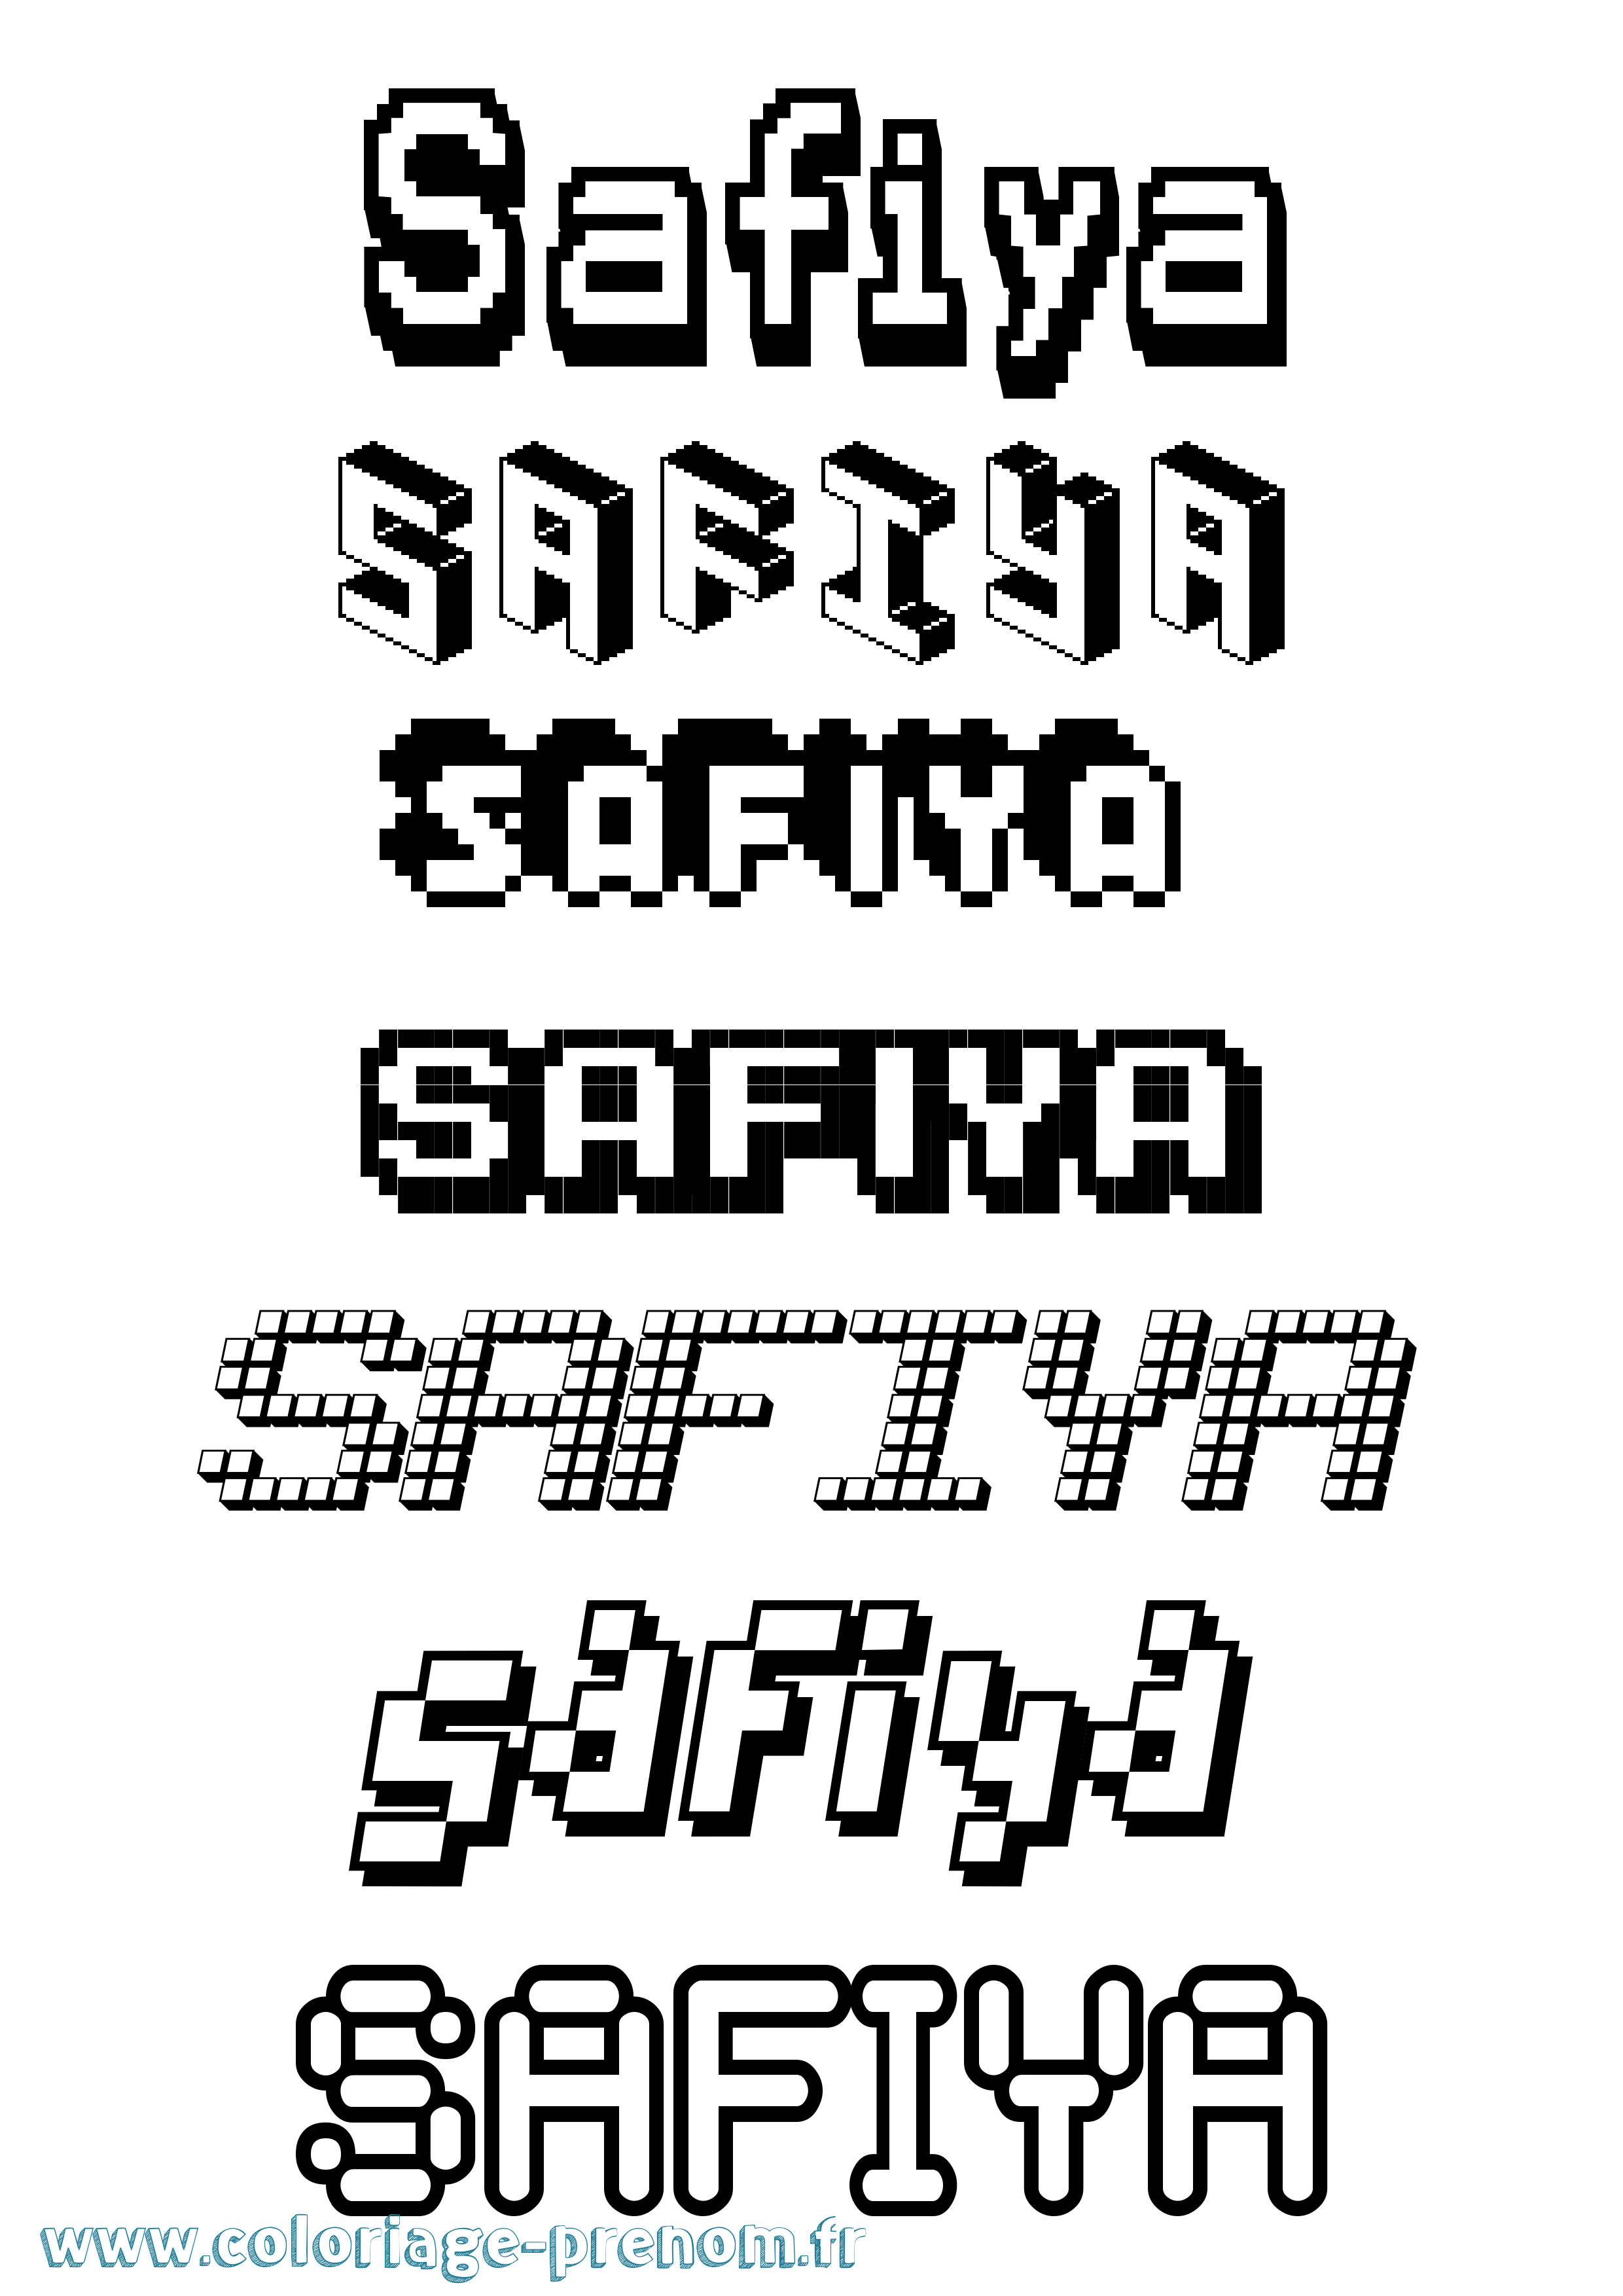 Coloriage prénom Safiya